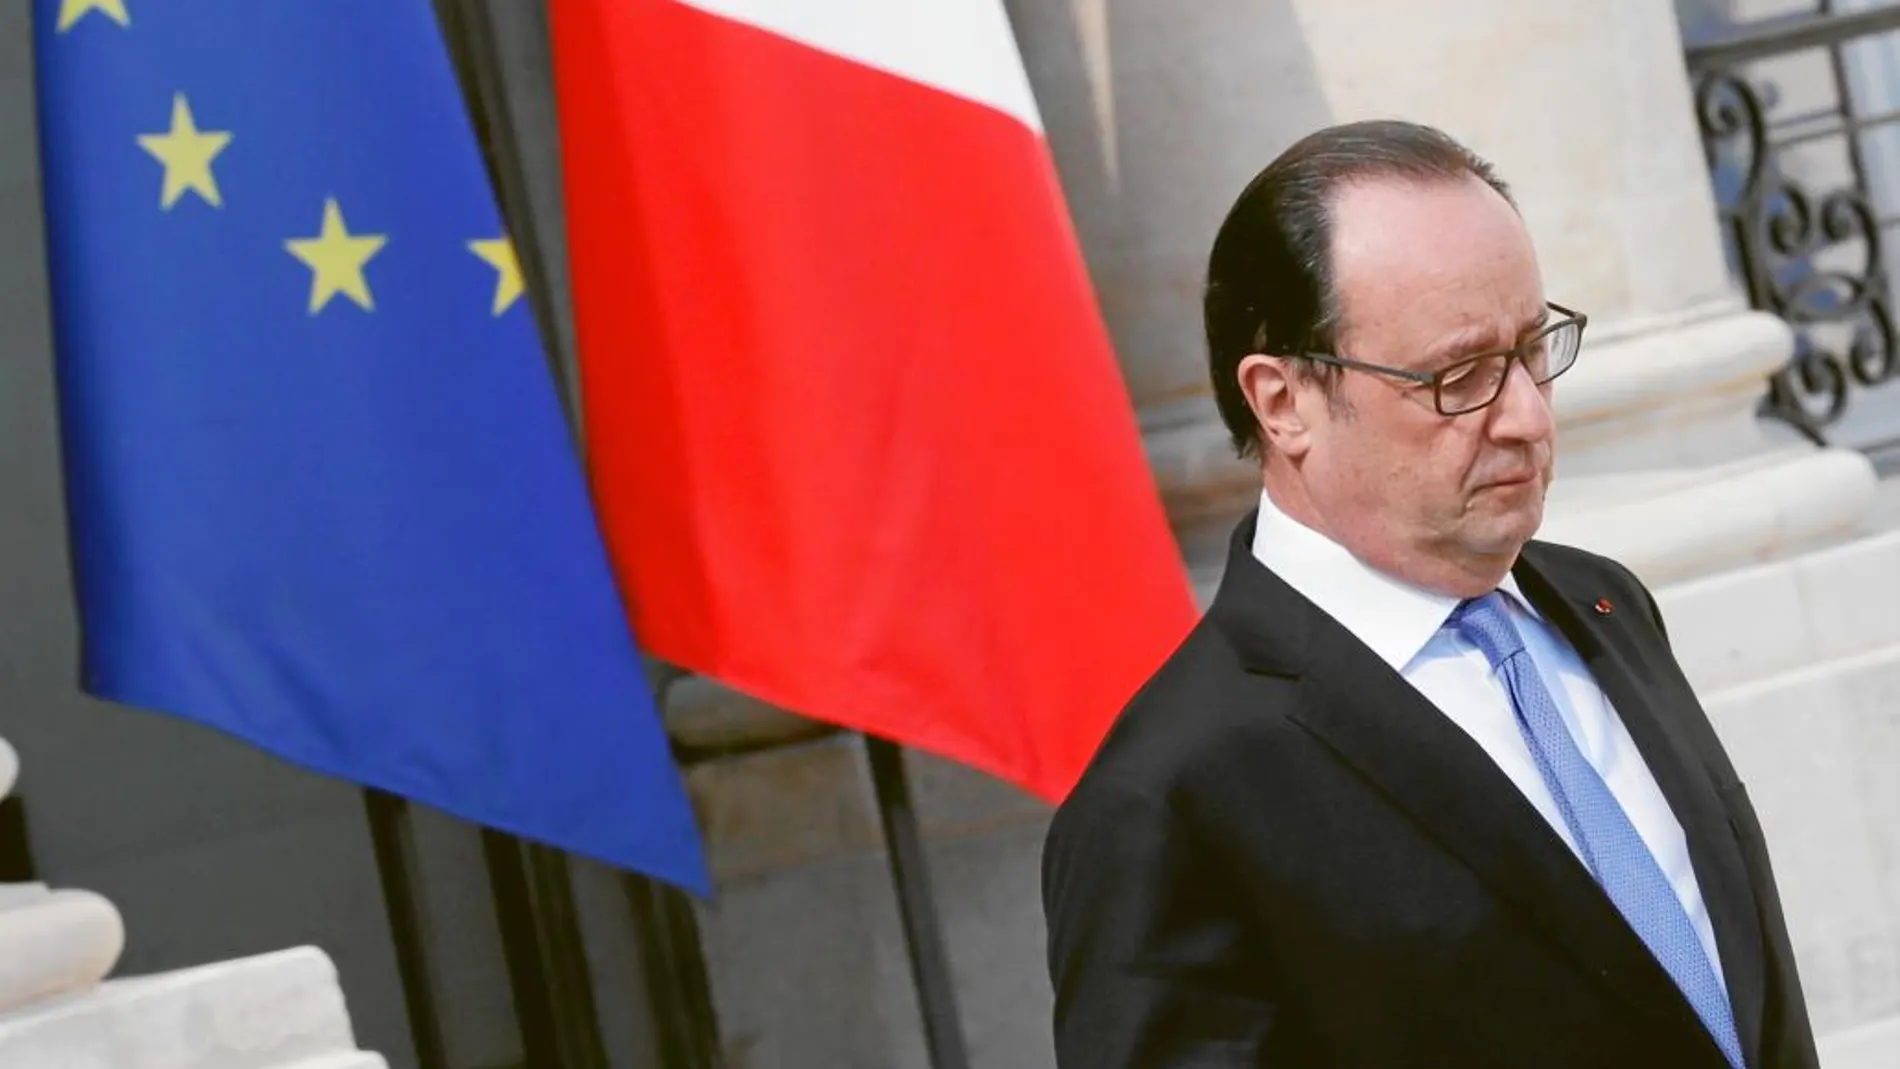 El presidente francés, François Hollande, pidió ayer unidad a sus compatriotas